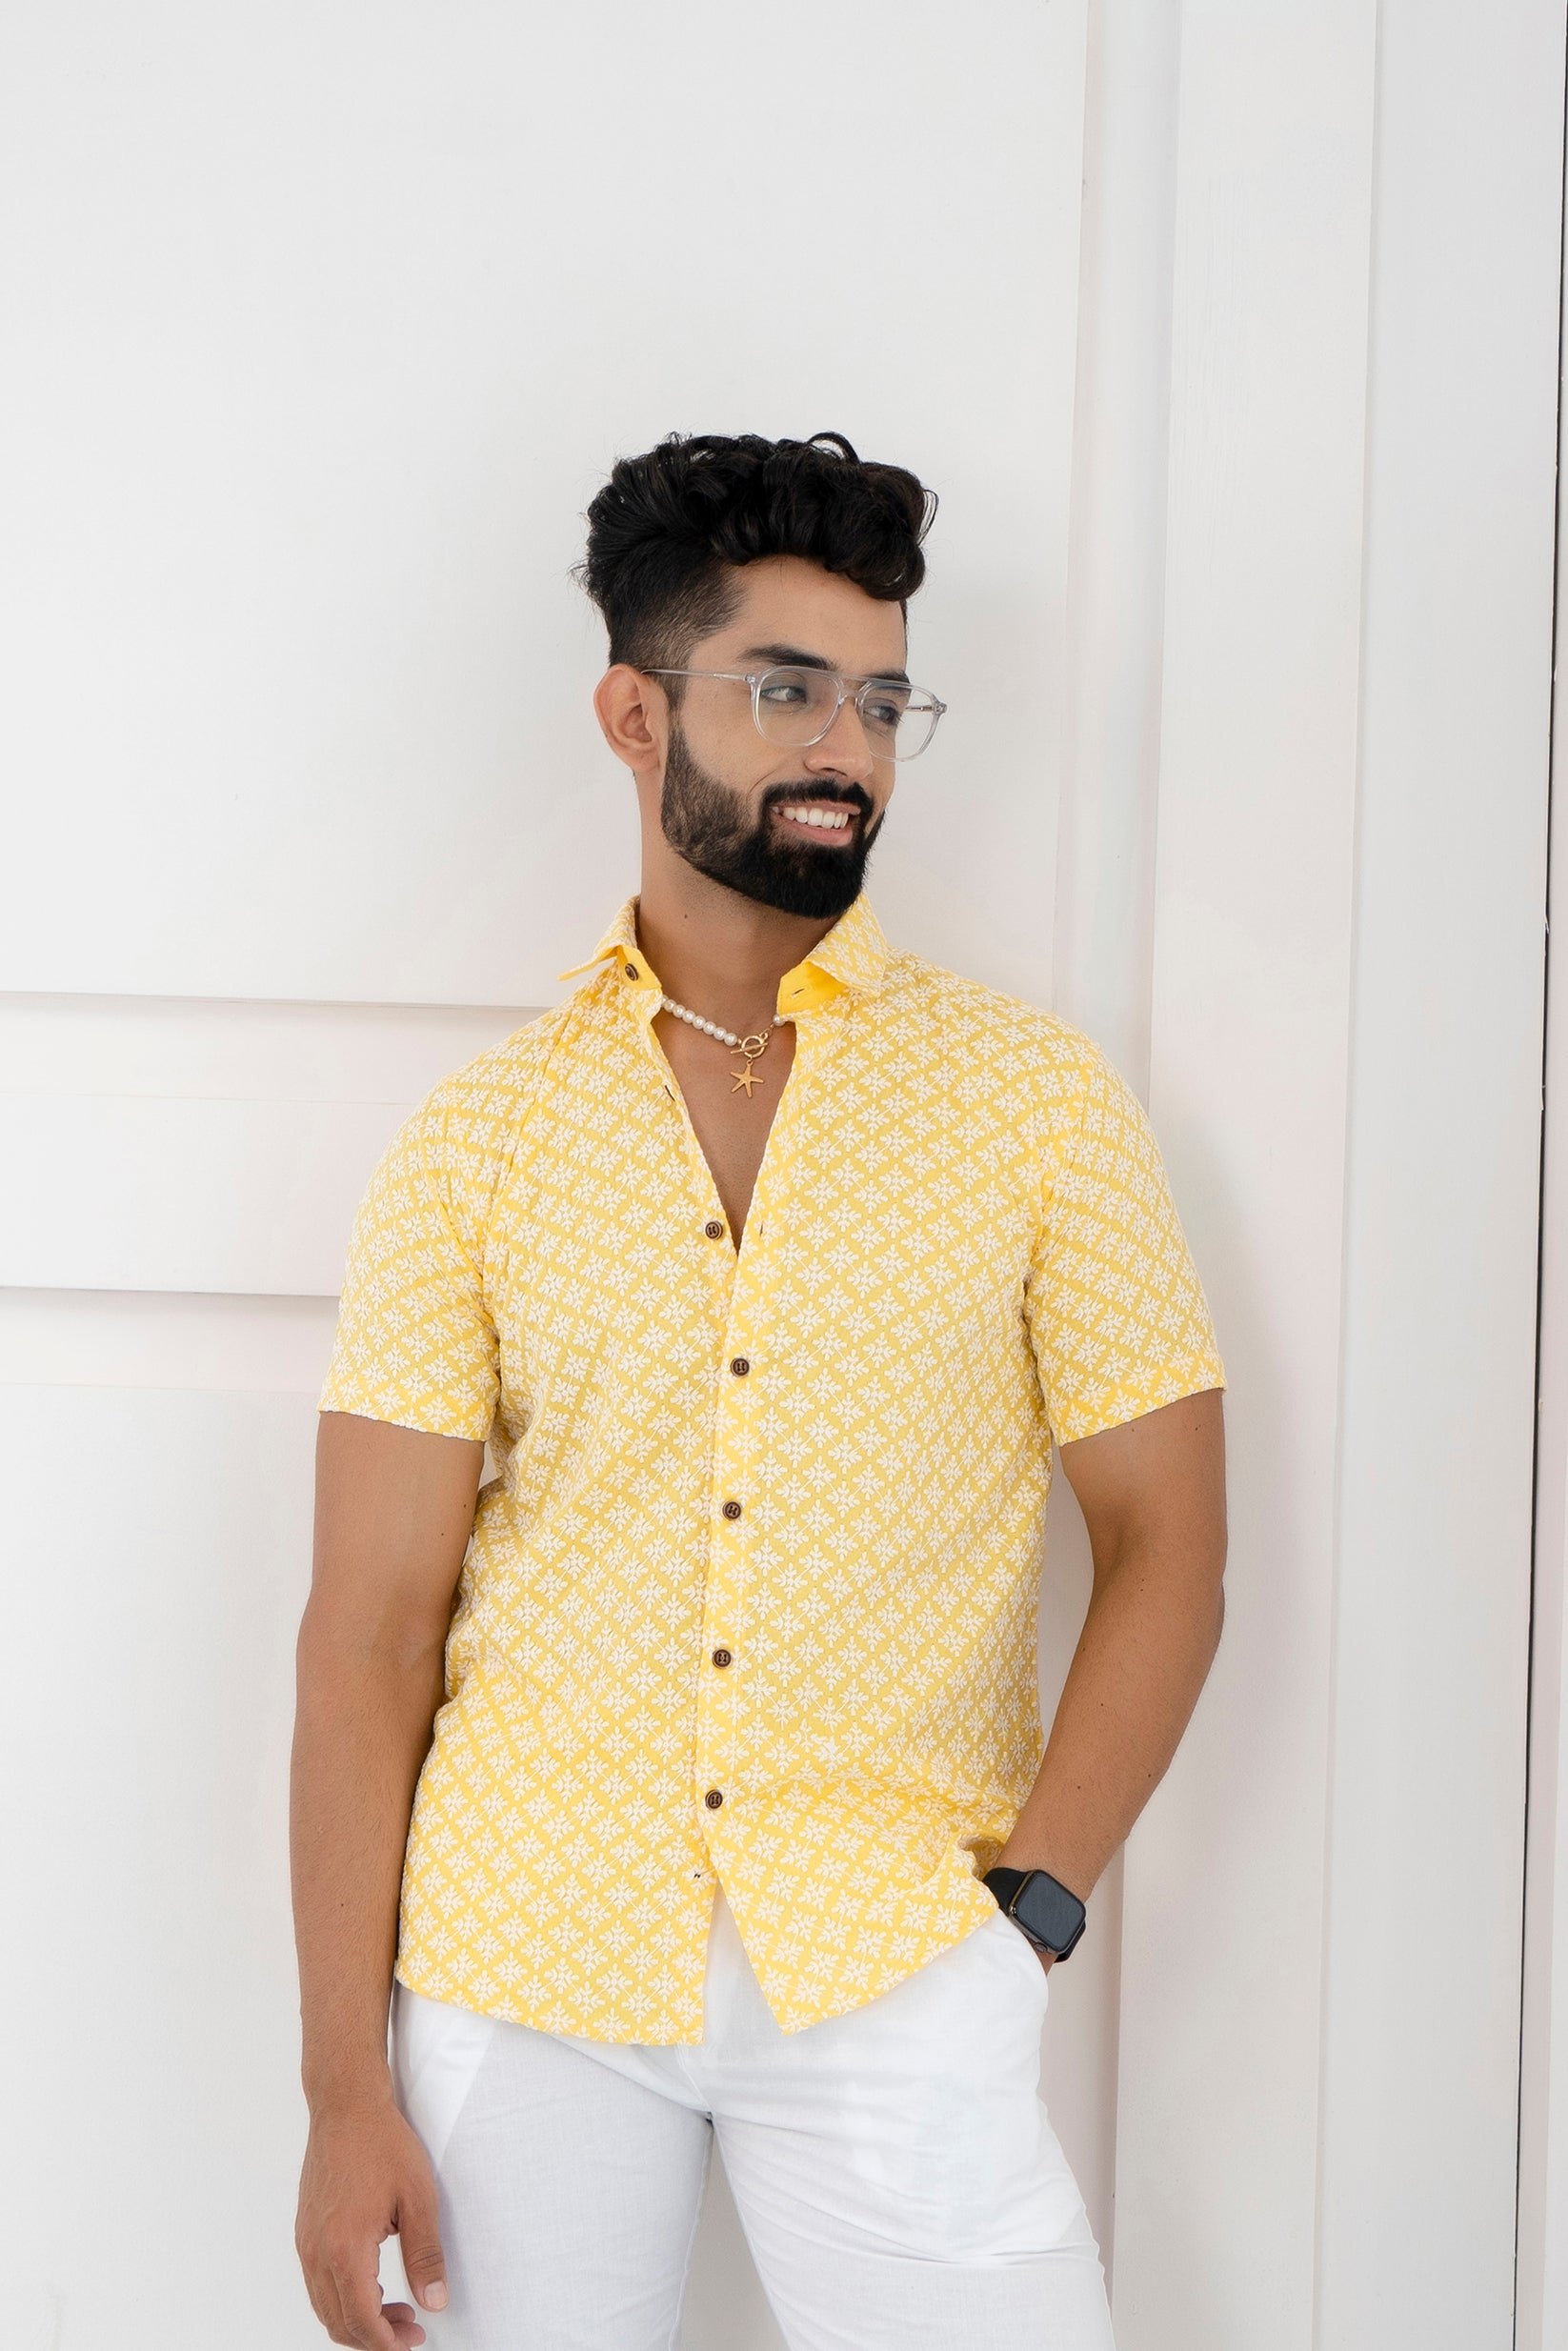 Firangi Yarn Super Soft Half Sleeves Chikankari schiffli Embroided Men's Shirt Yellow